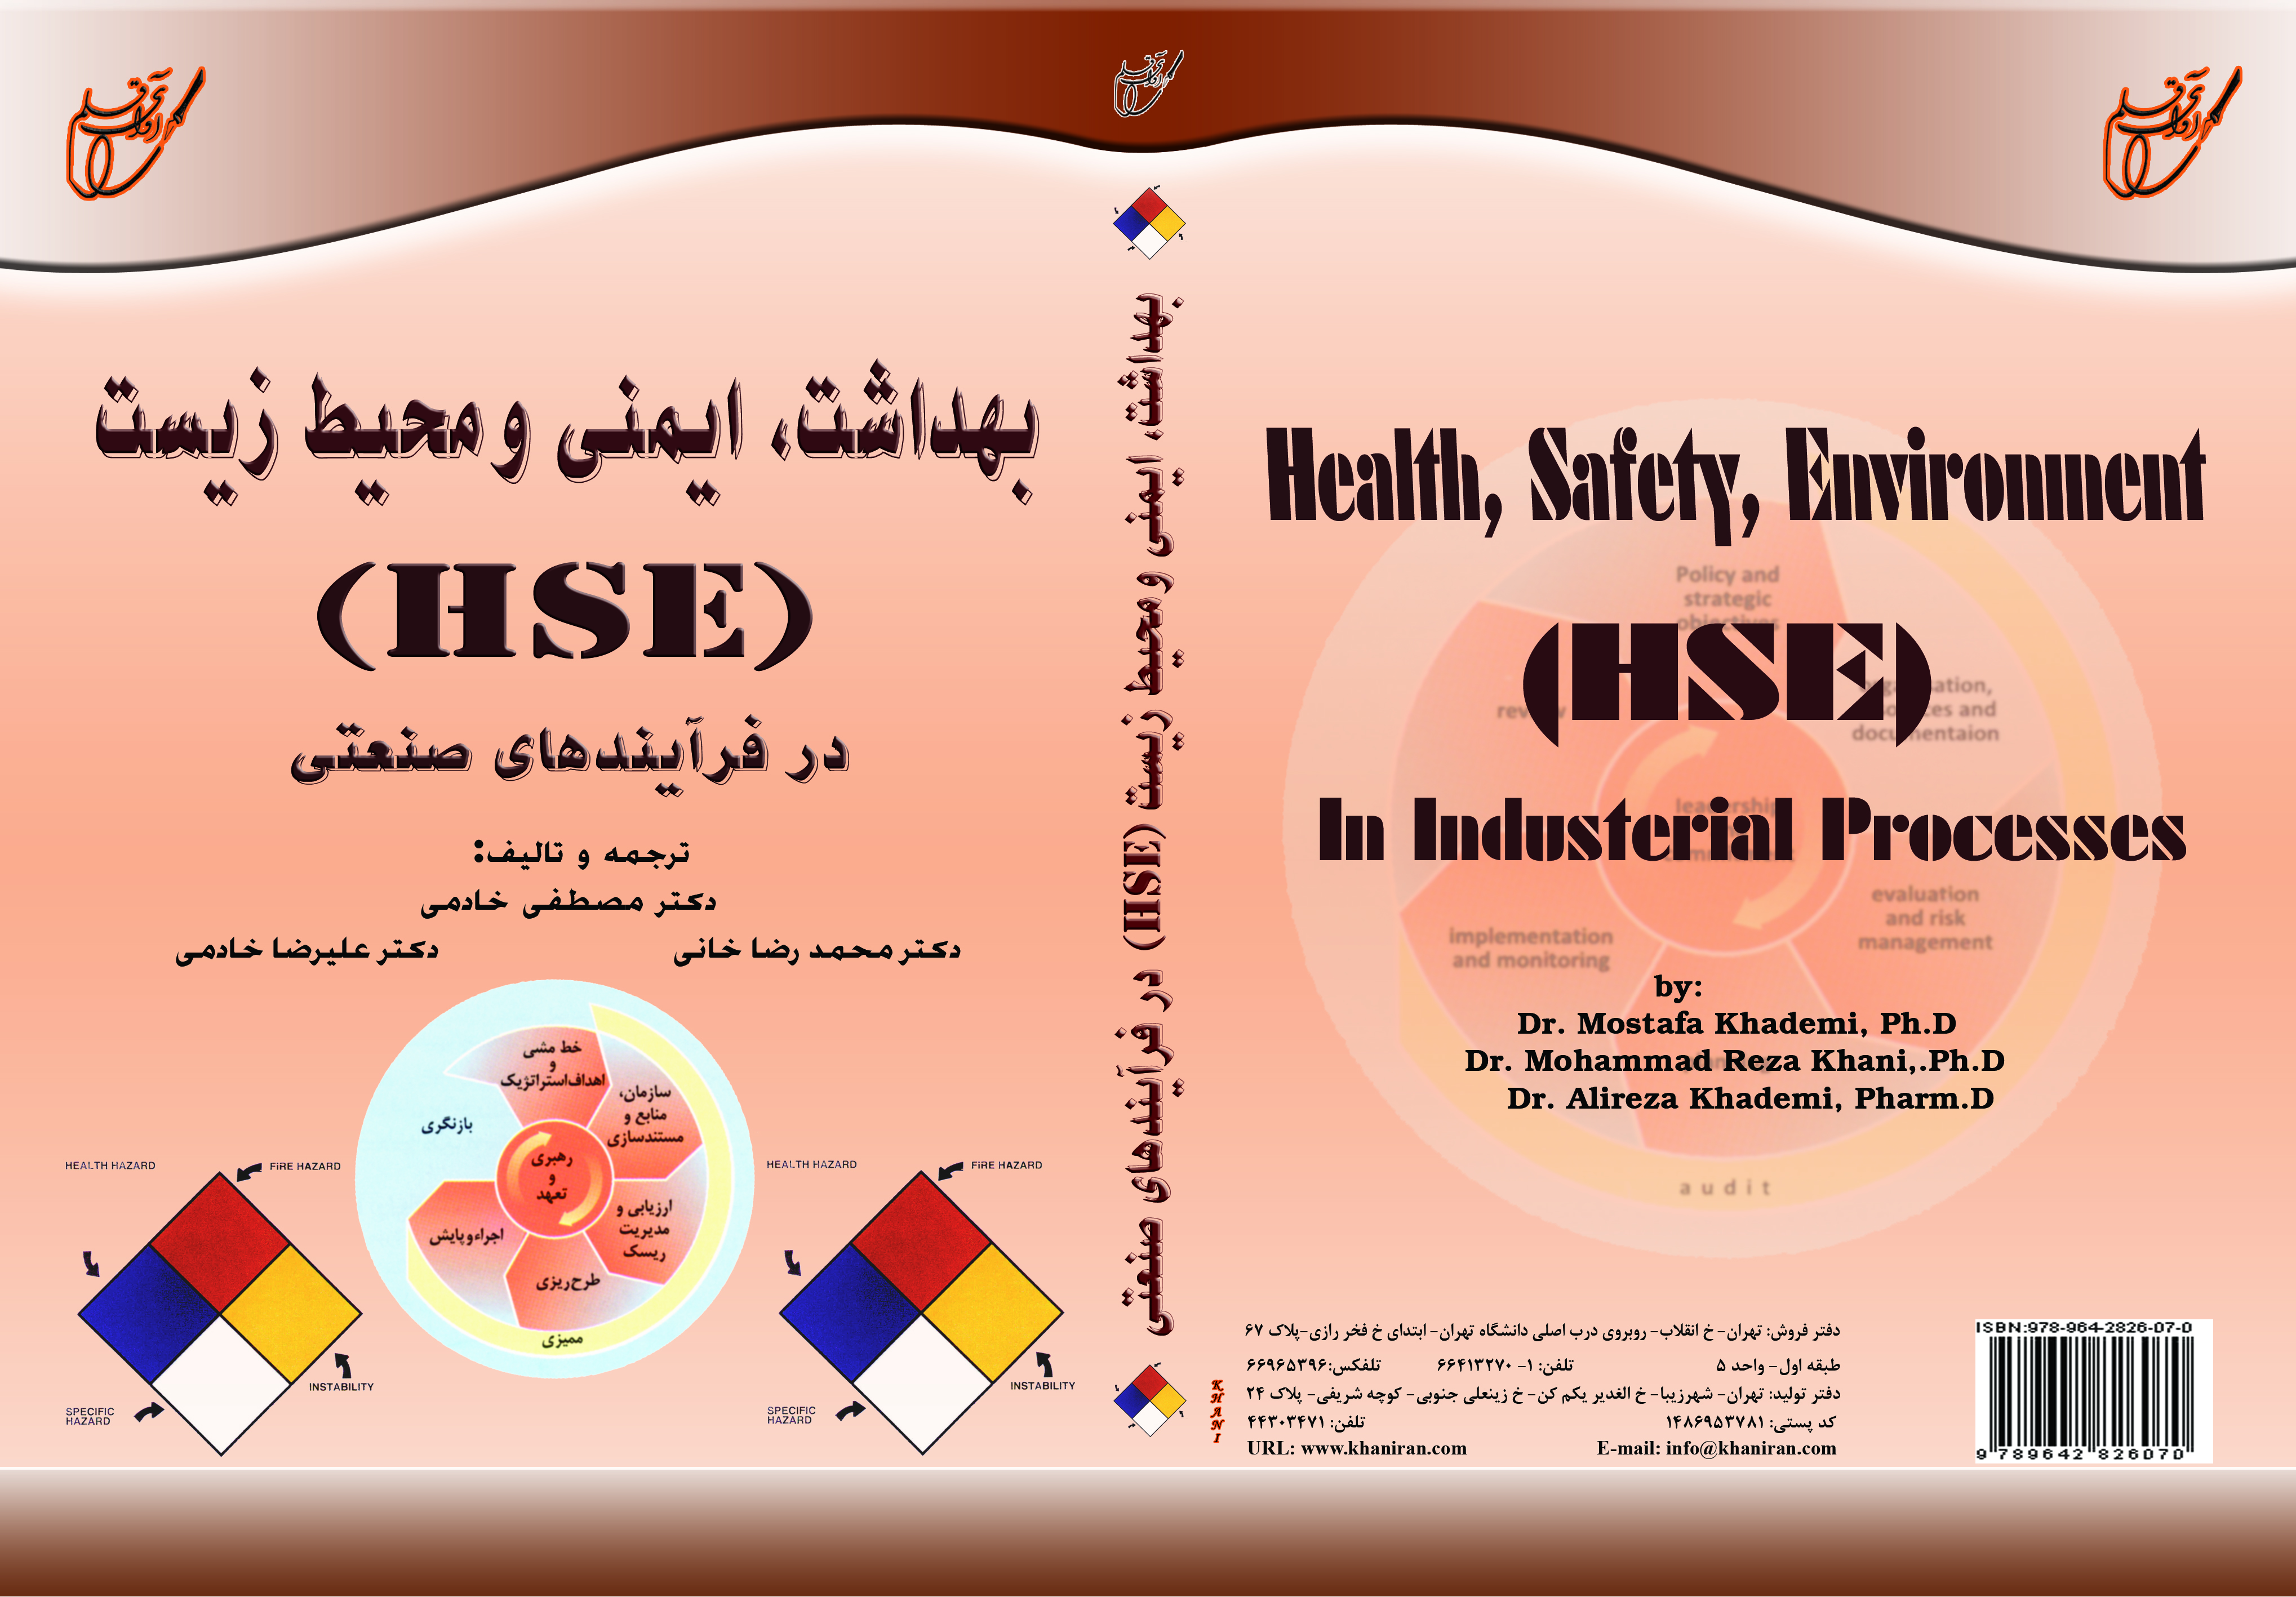 بهداشت، ايمني و محيط زيست(H.S.E) در فرآيندهاي صنعتي